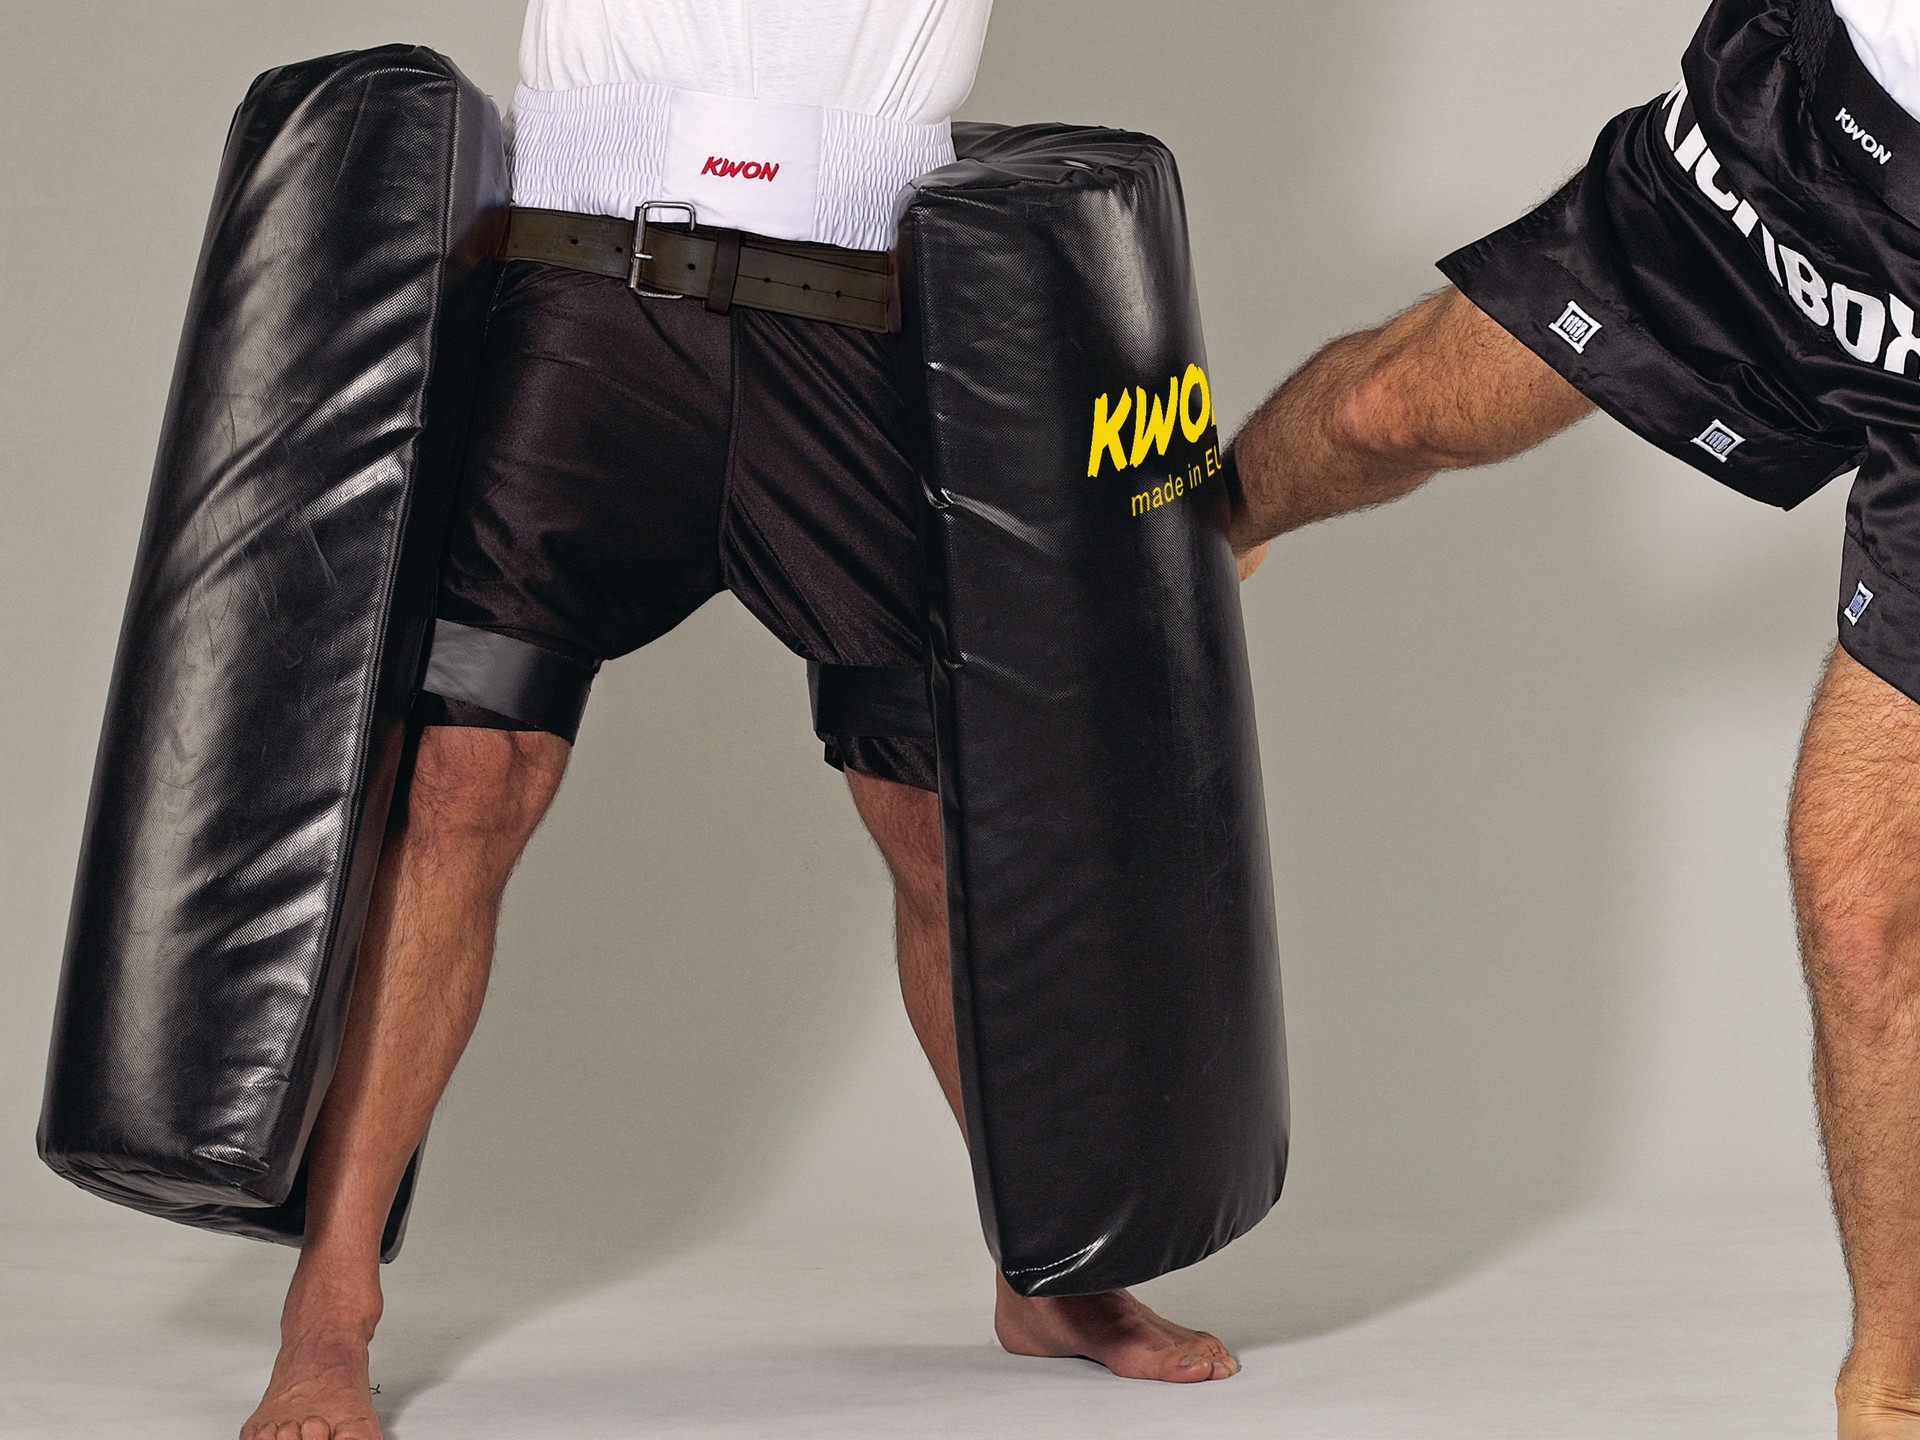 Schlagpolst Kickpolster KWON Multi Function Shields Kickboxen MMA Muay Thai 